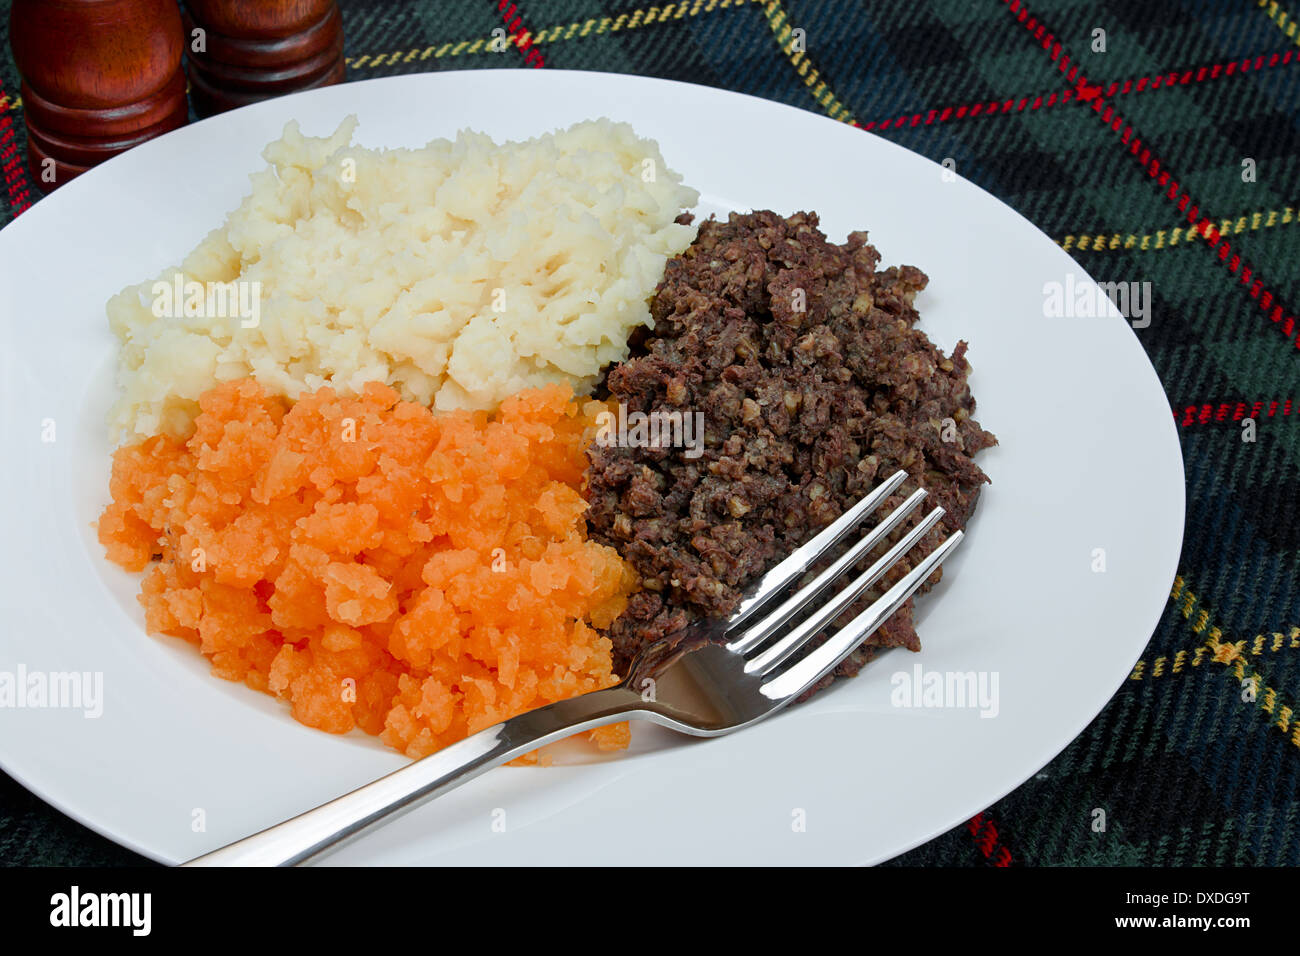 Tradicional escocesa haggis, neeps y tatties también conocido como quema la cena. Foto de stock